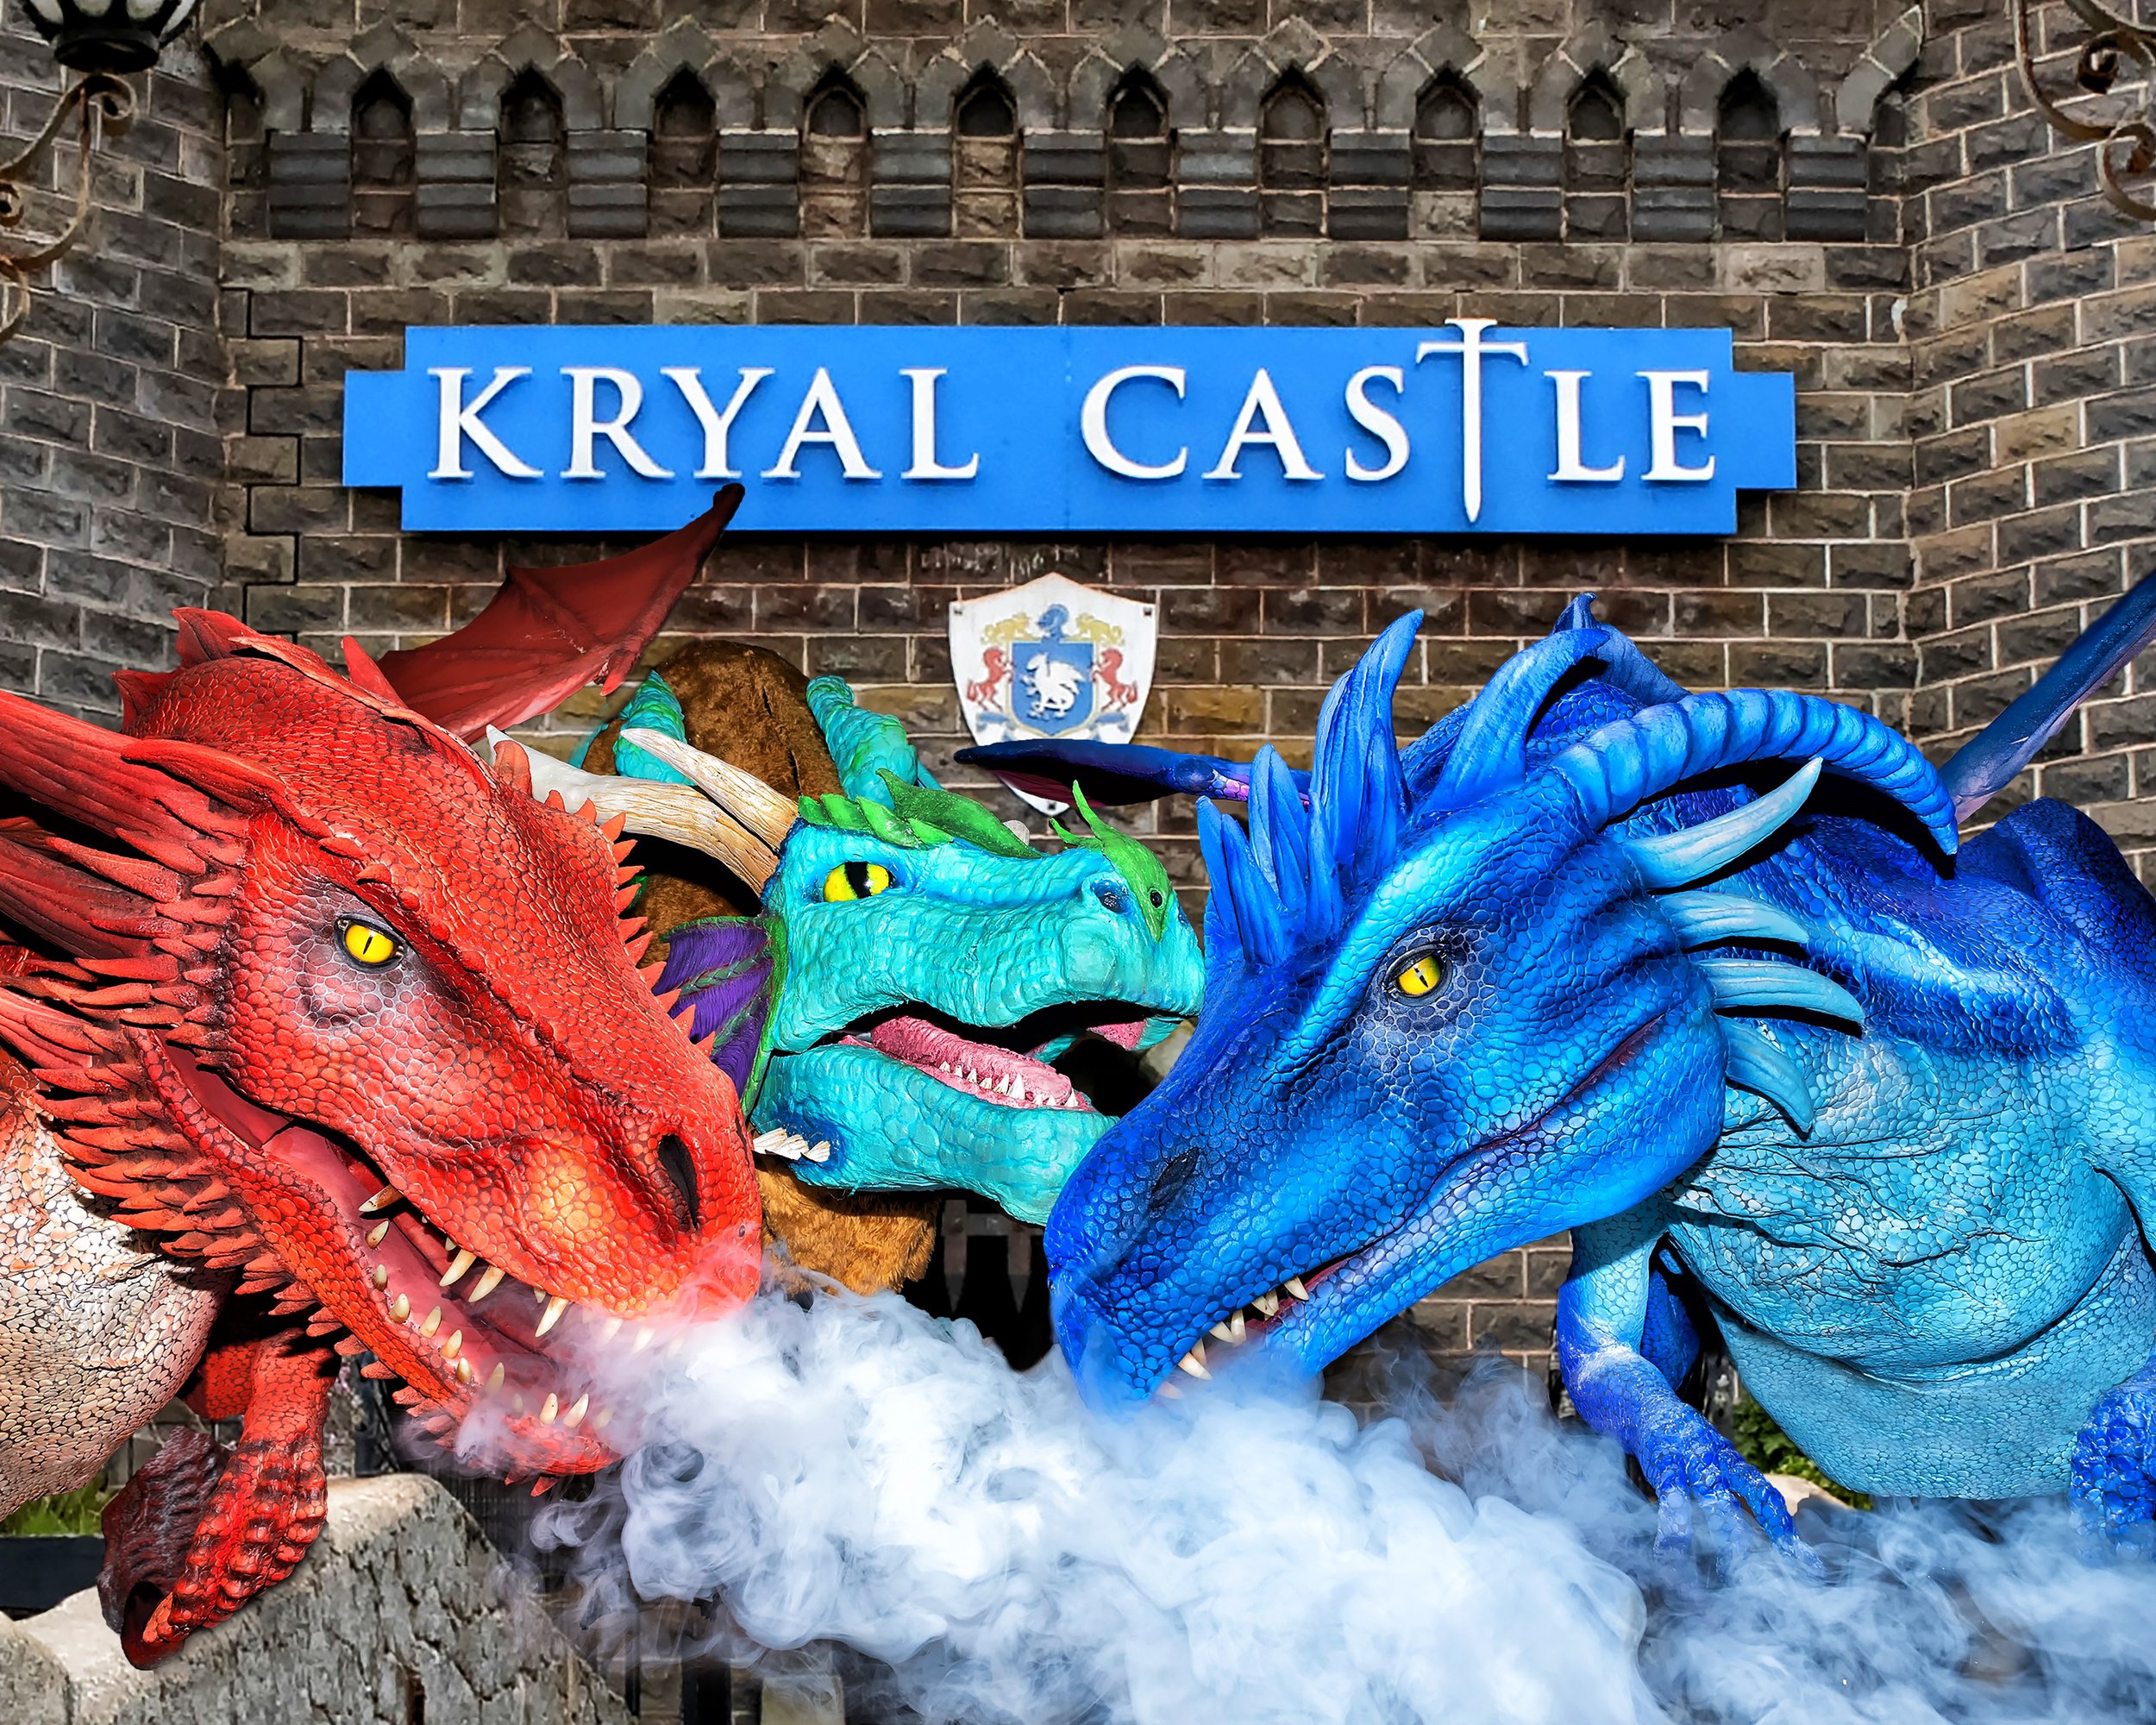 Dragons at Kryal Castle